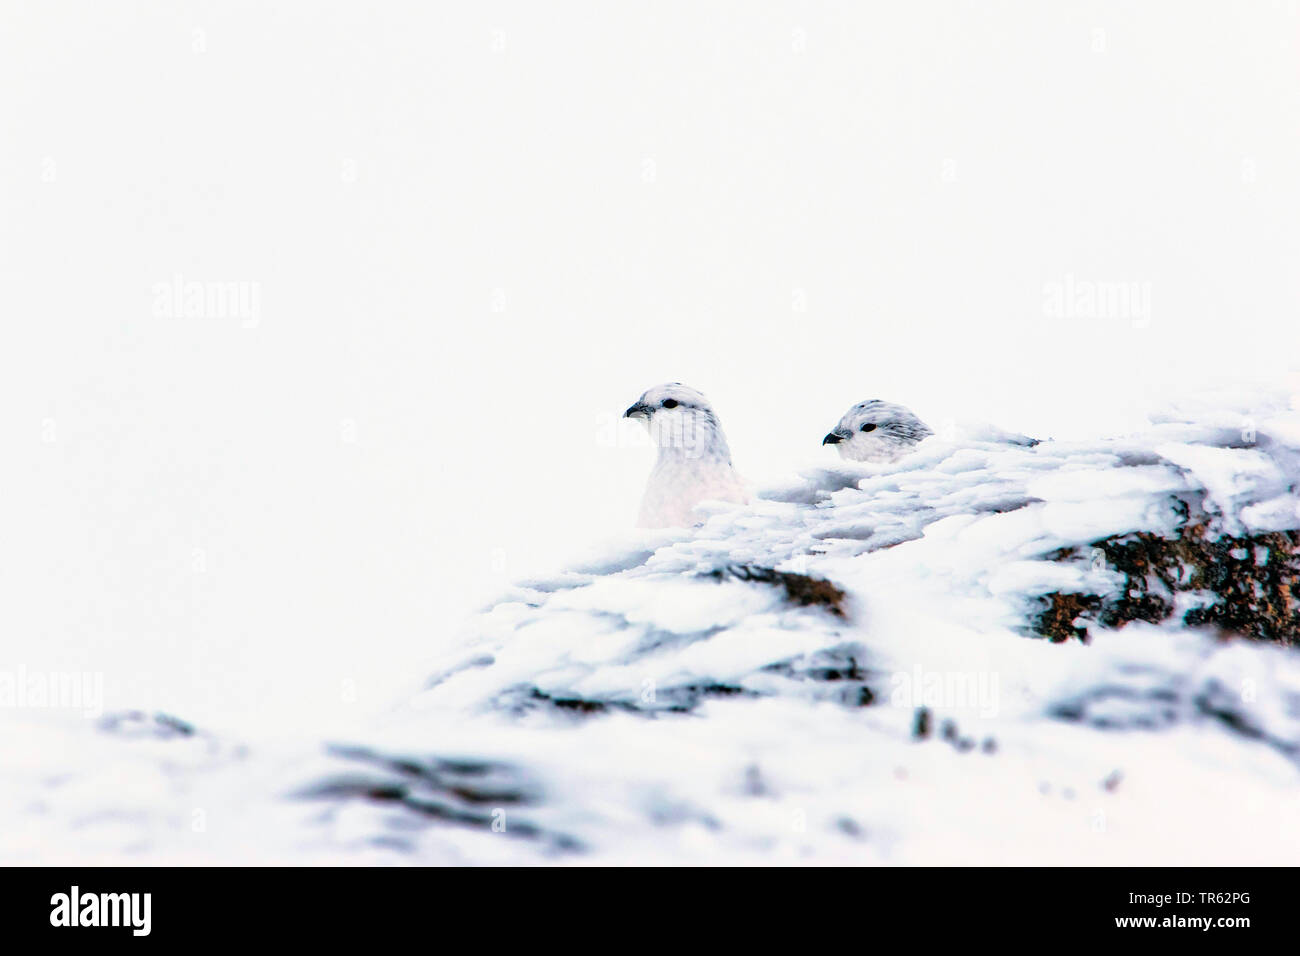 Le lagopède alpin, le poulet Neige (Lagopus mutus), deux poules de neige assis dans la neige et de peering derrière un rocher, Royaume-Uni, Ecosse, Avimore Banque D'Images